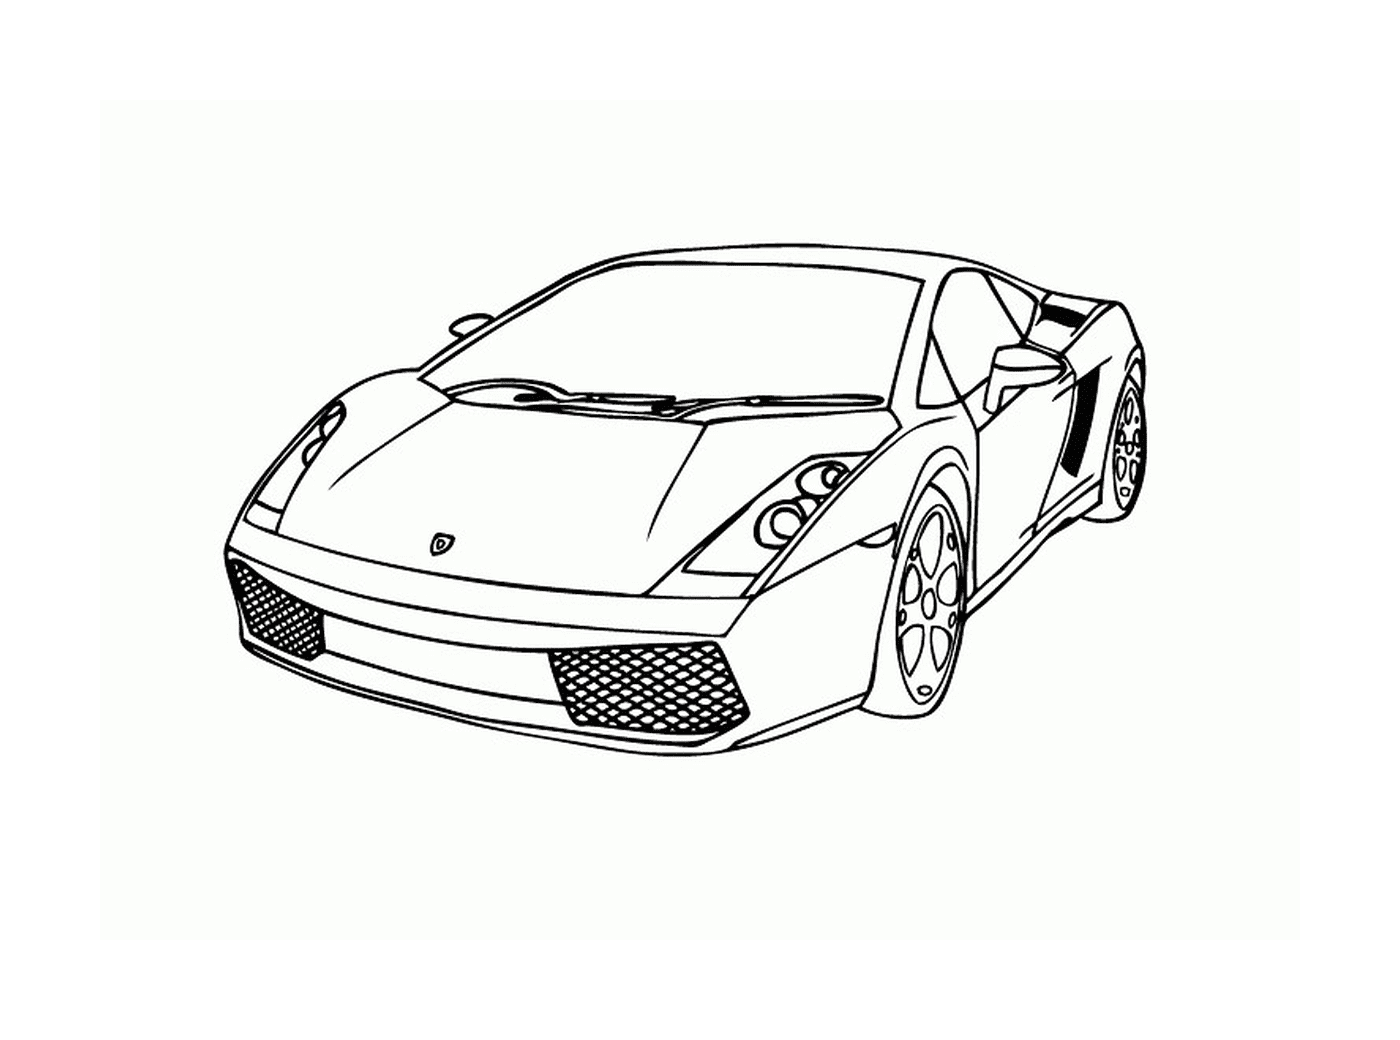  Автомобили Lamborghini, вид сверху 